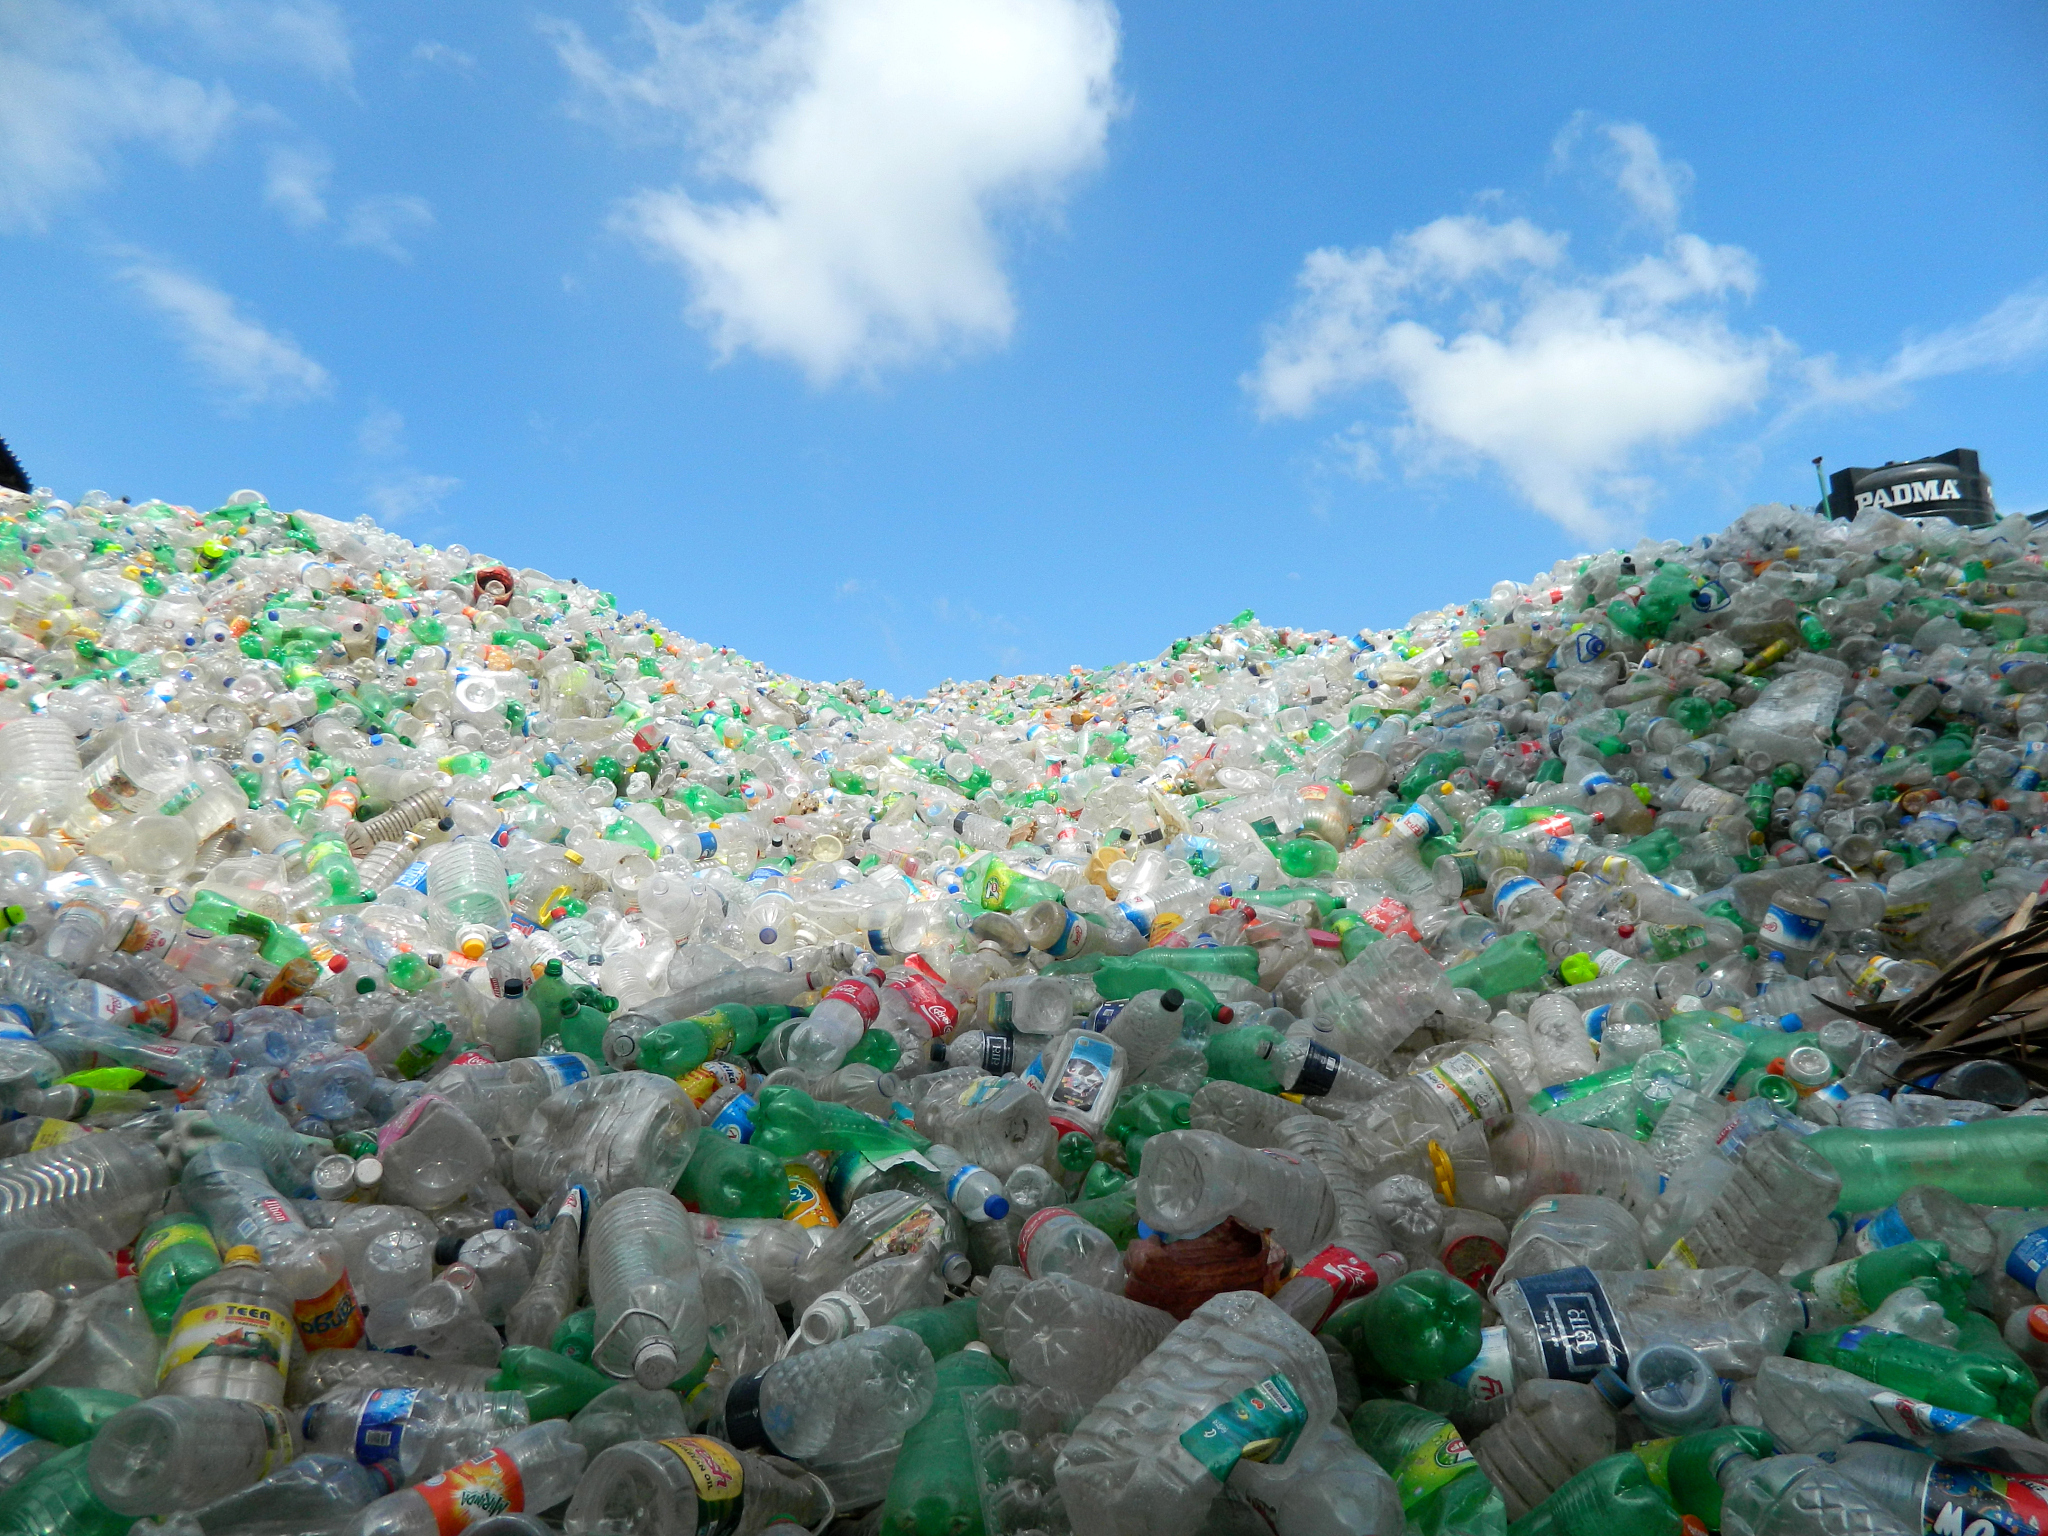 塑料瓶属于什么垃圾?塑料瓶是固体废弃物吗